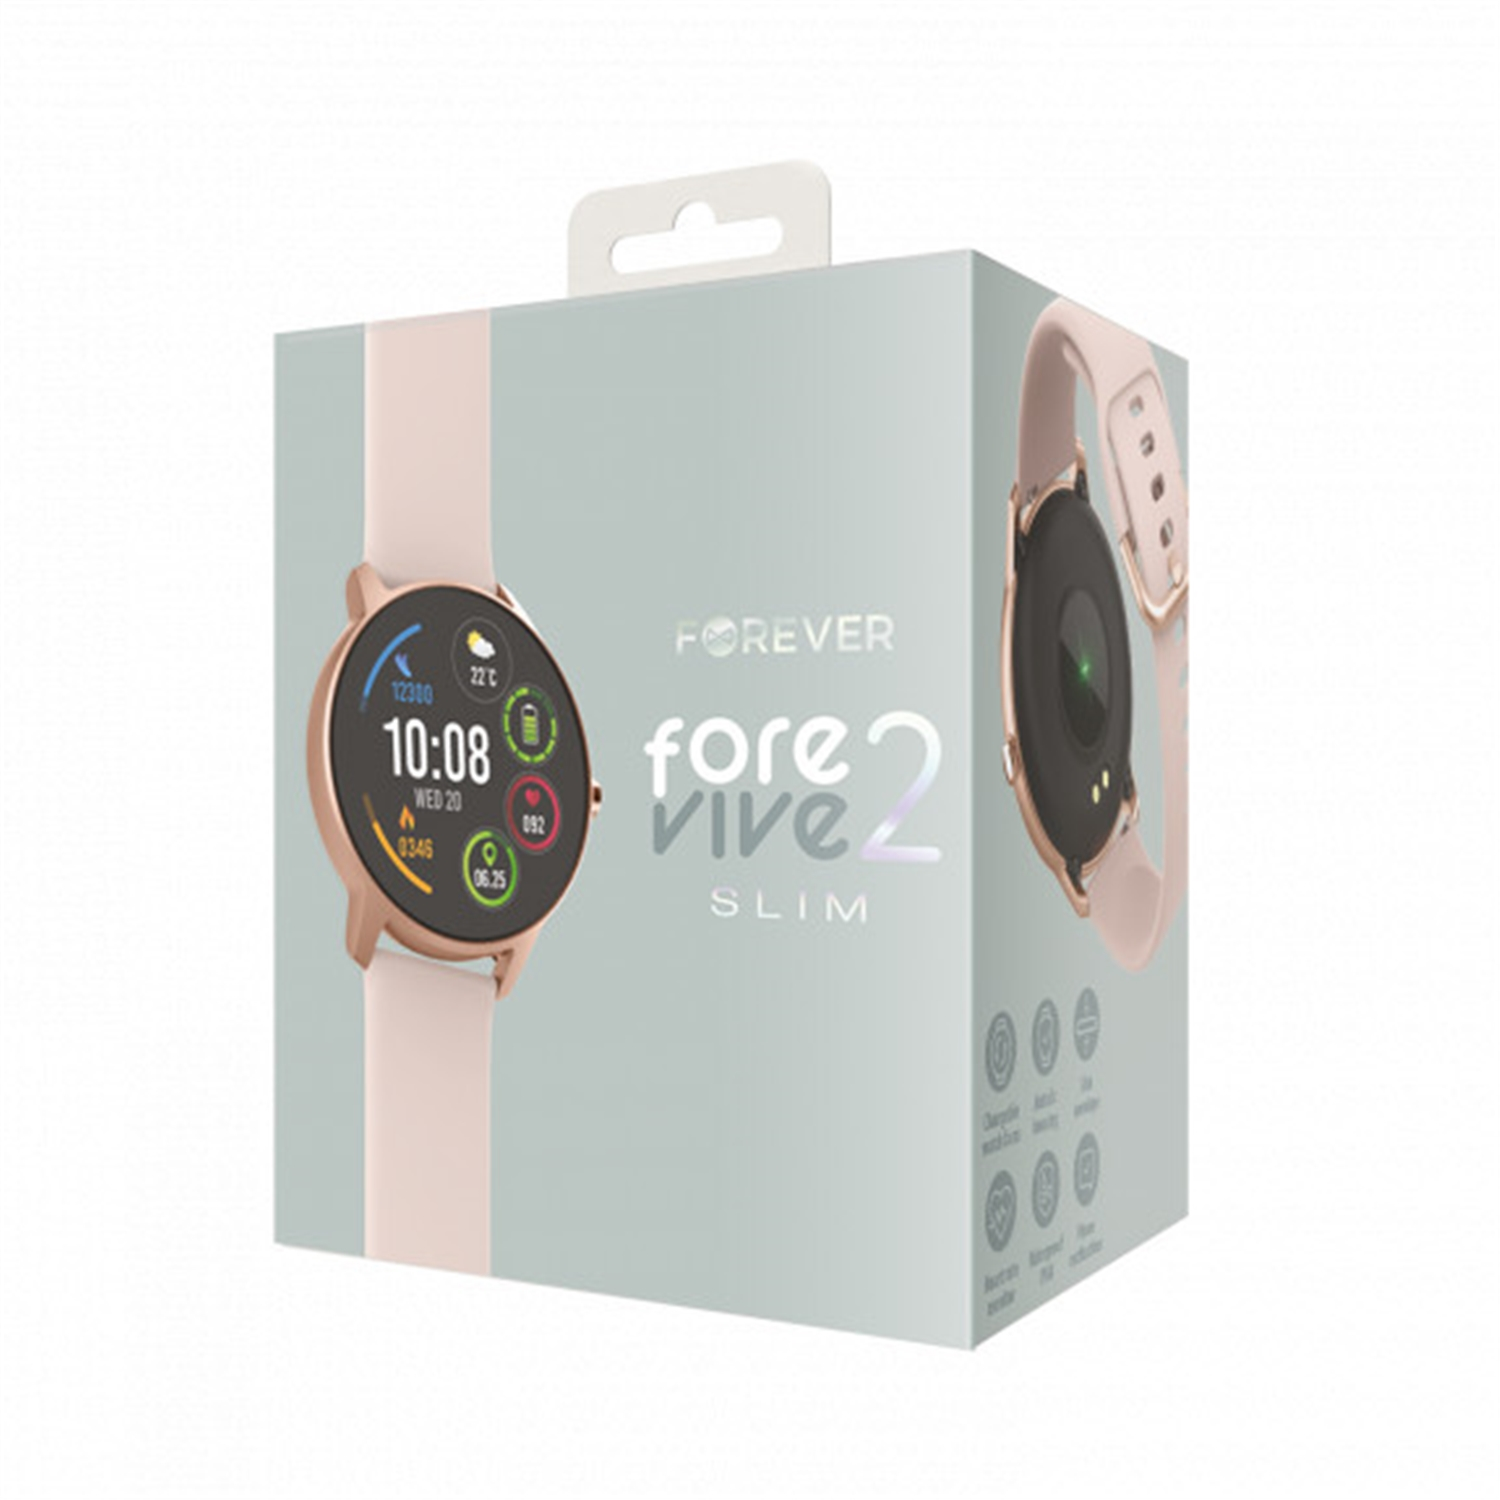 Slim SB-326 Rosa Silikon, ForeVive 2 Smartwatch FOREVER